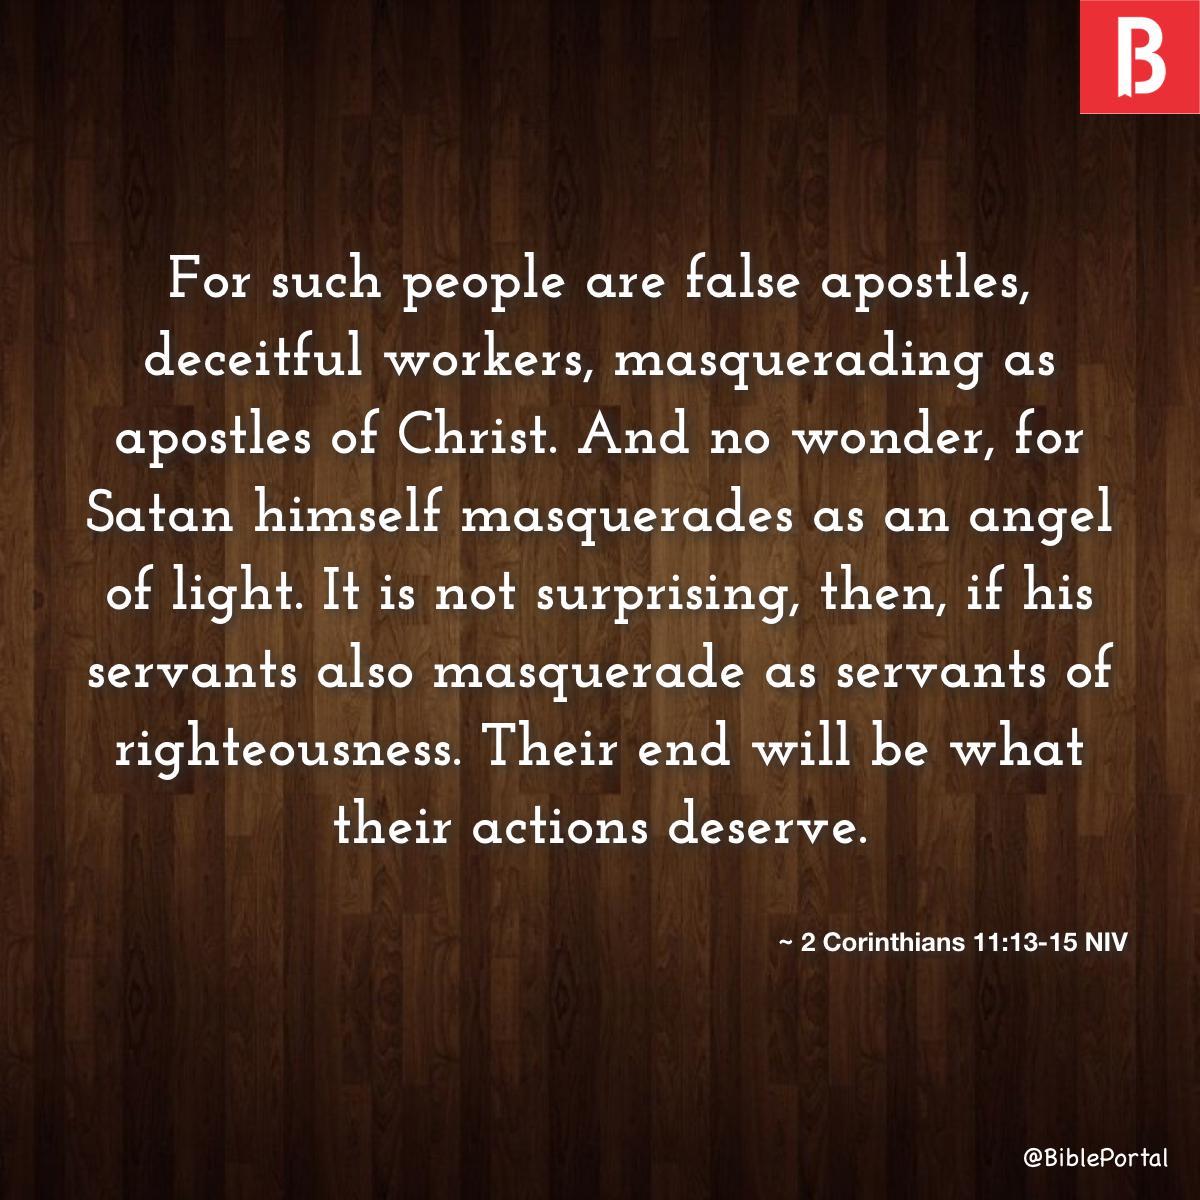 2 Corinthians 11:13-15 NIV